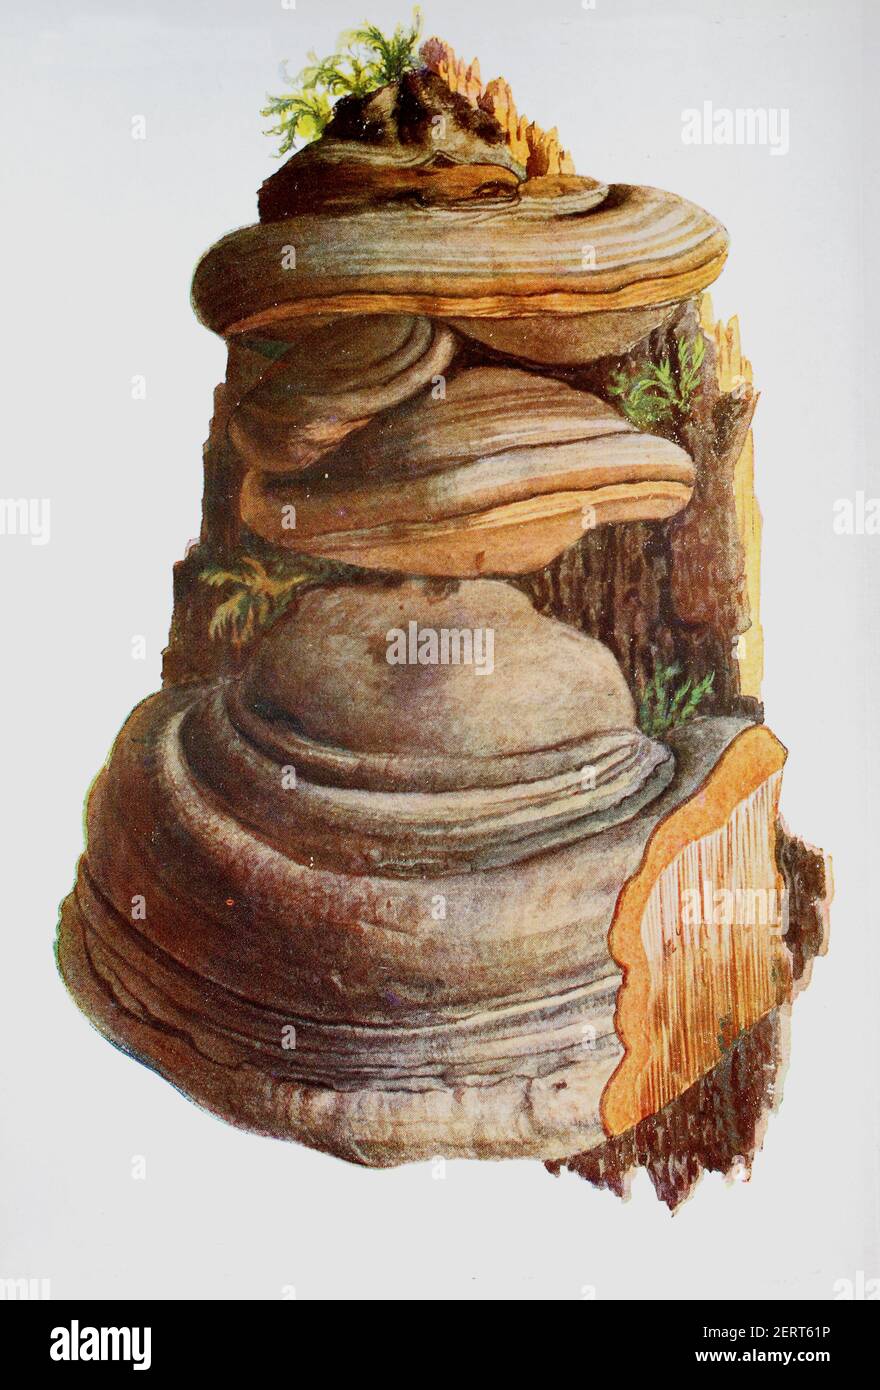 Le Fomes fomentarius (communément appelé champignon de l'urine, champignon de l'urine fausse, champignon du sabot, conk de l'urine, polypore de l'urine ou champignon de l'homme de glace) est une espèce d'agent pathogène fongique des plantes, reproduction numérique d'une iluration d'Emil Doerstling (1859-1940) Banque D'Images